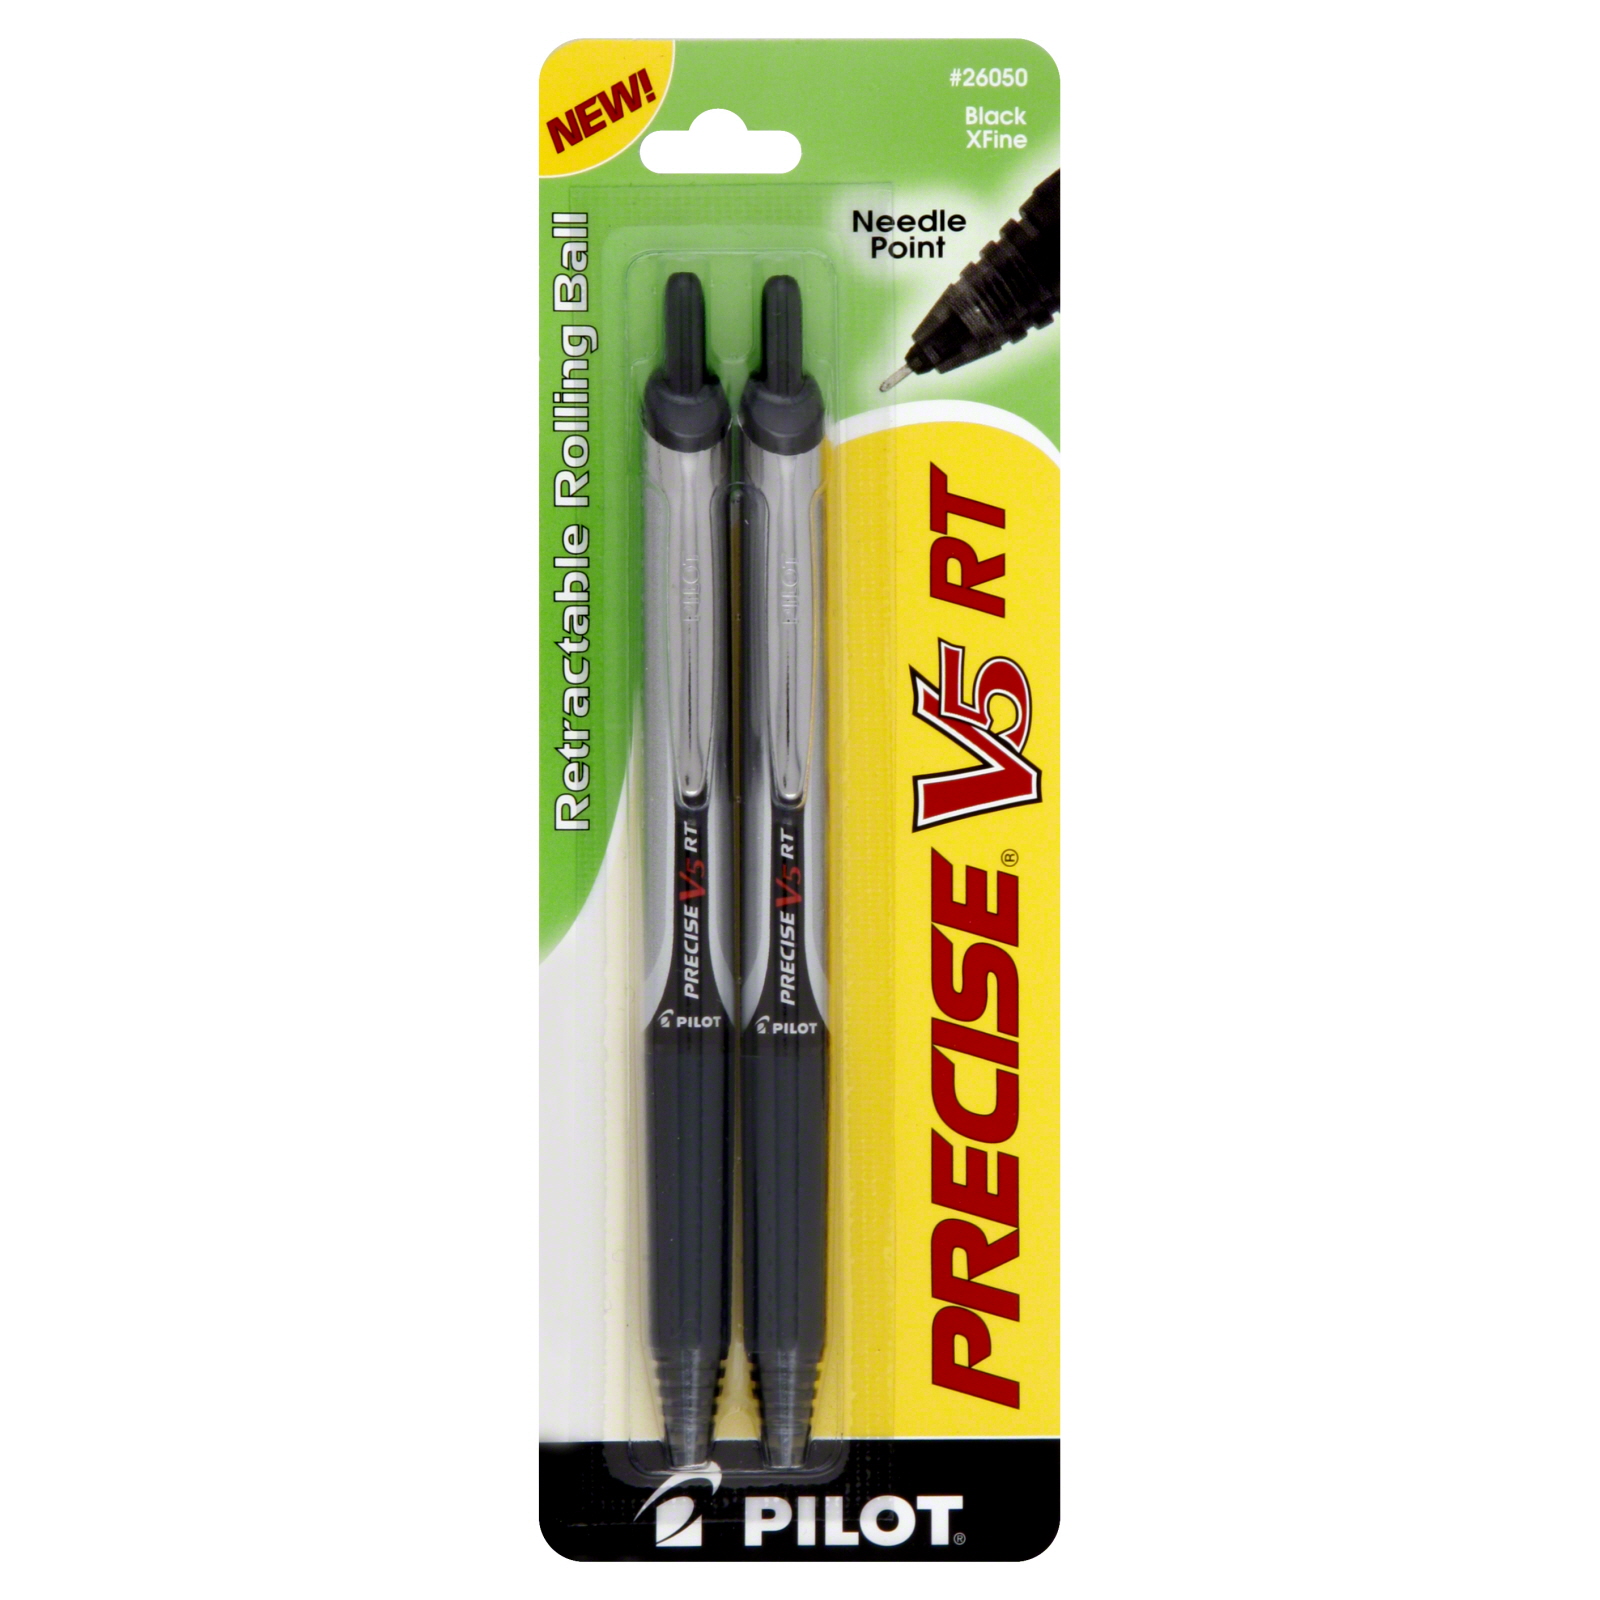 Pilot Automotive Precise V5 RT Rolling Ball Pens, Retractable, Needle Point, XFine, Black, 2 pens